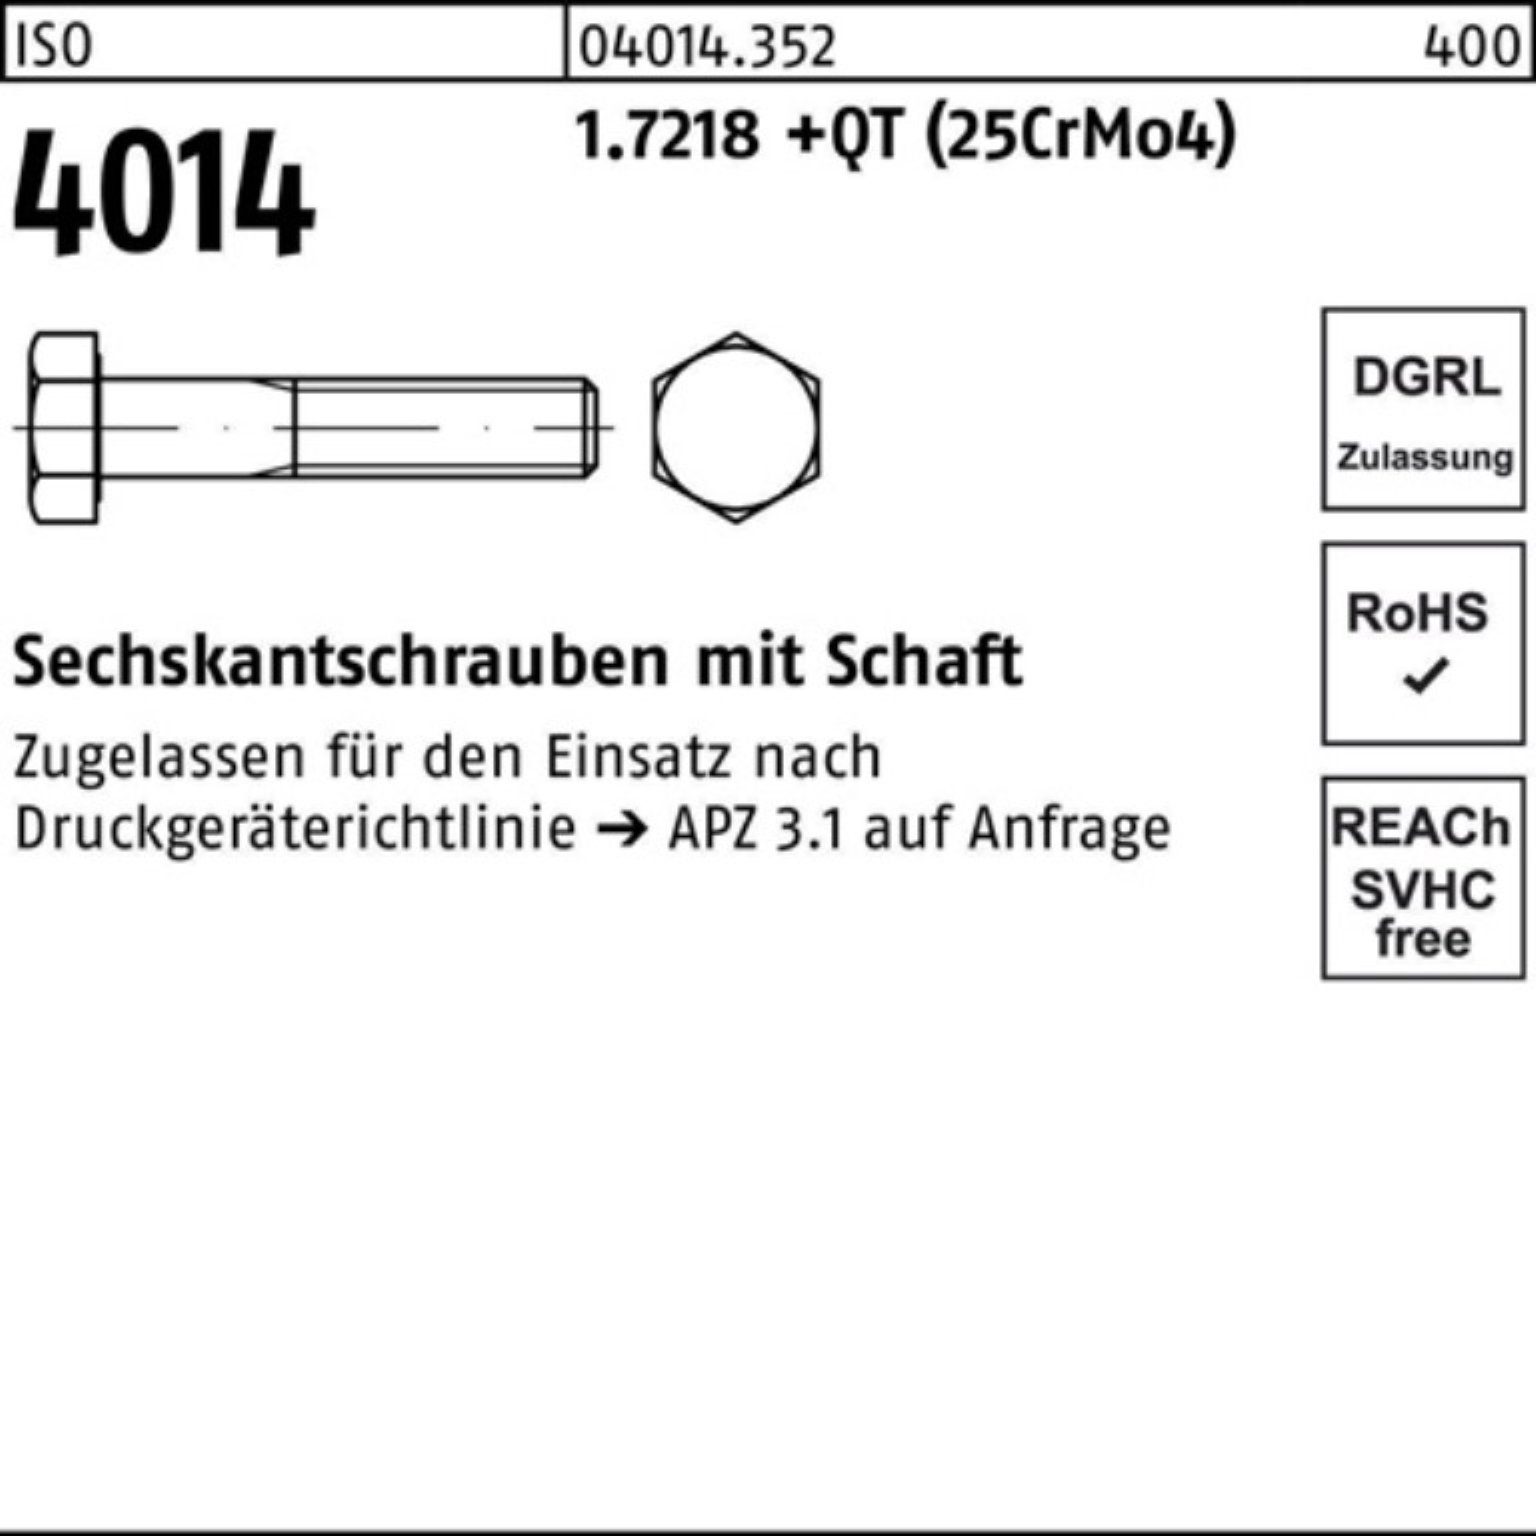 Schaft 160 Bufab 1.7218 100er Sechskantschraube M16x (25Cr ISO Pack 4014 Sechskantschraube +QT